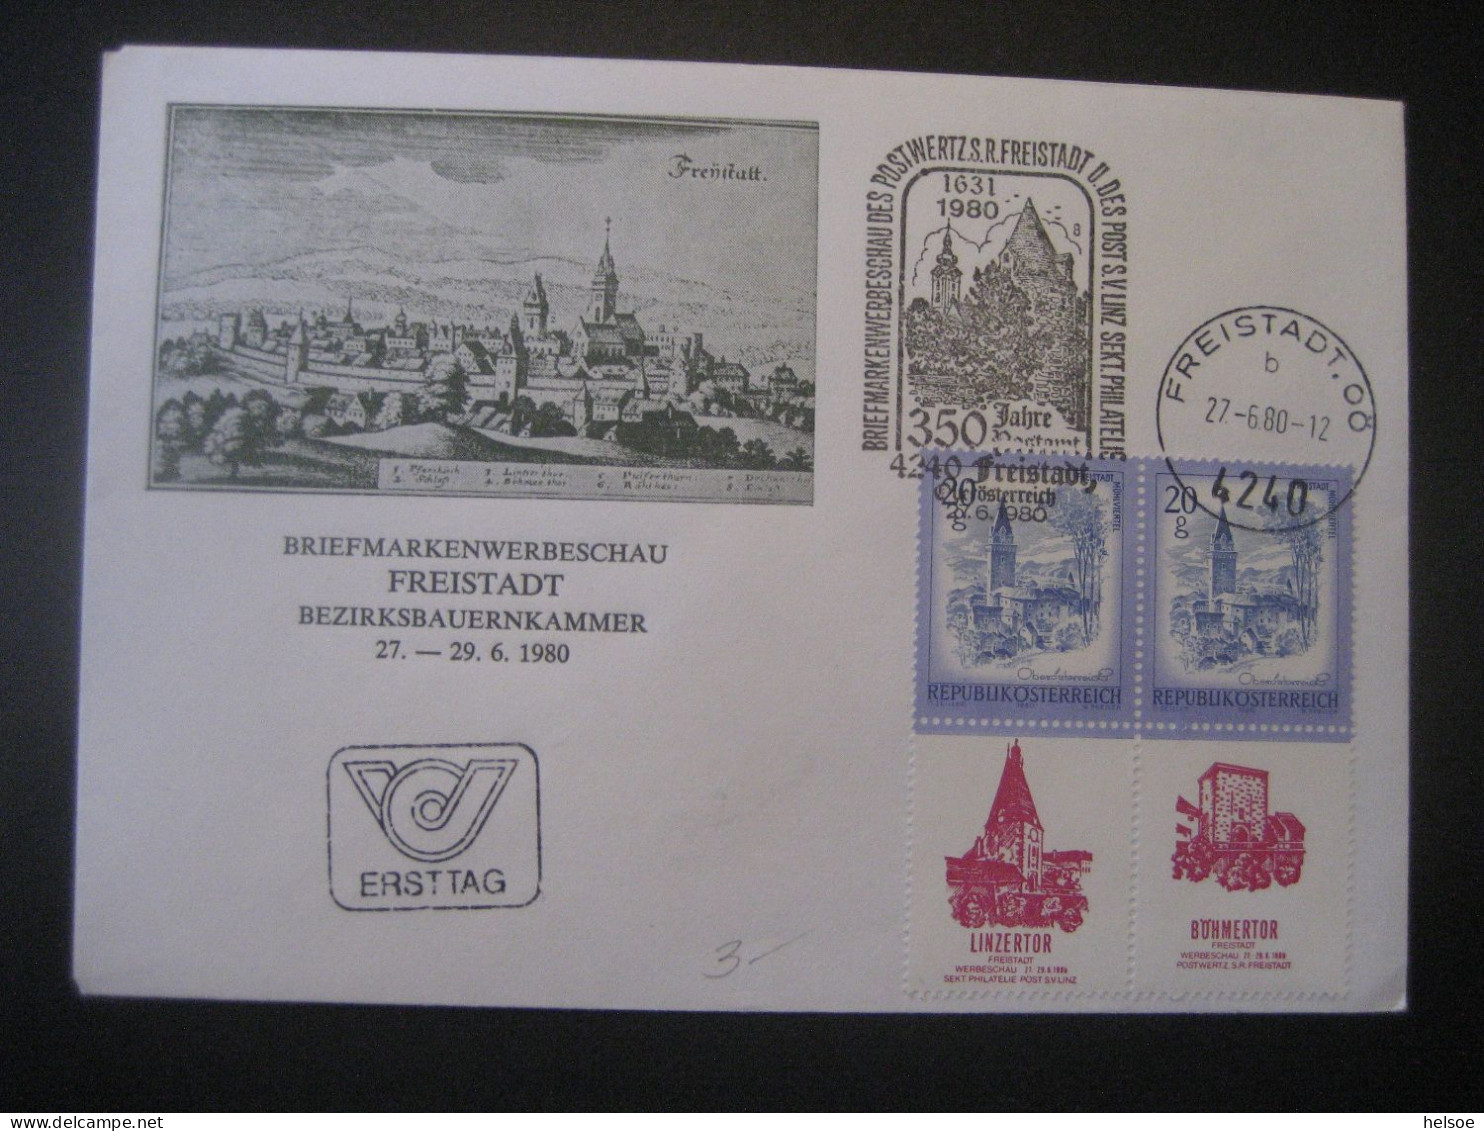 Österreich 1980- FDC Sonder-Umschlag Freistadt Von Der Briefmarkenwerbeschau Mit Allongen, MiNr. 1649 - Briefe U. Dokumente